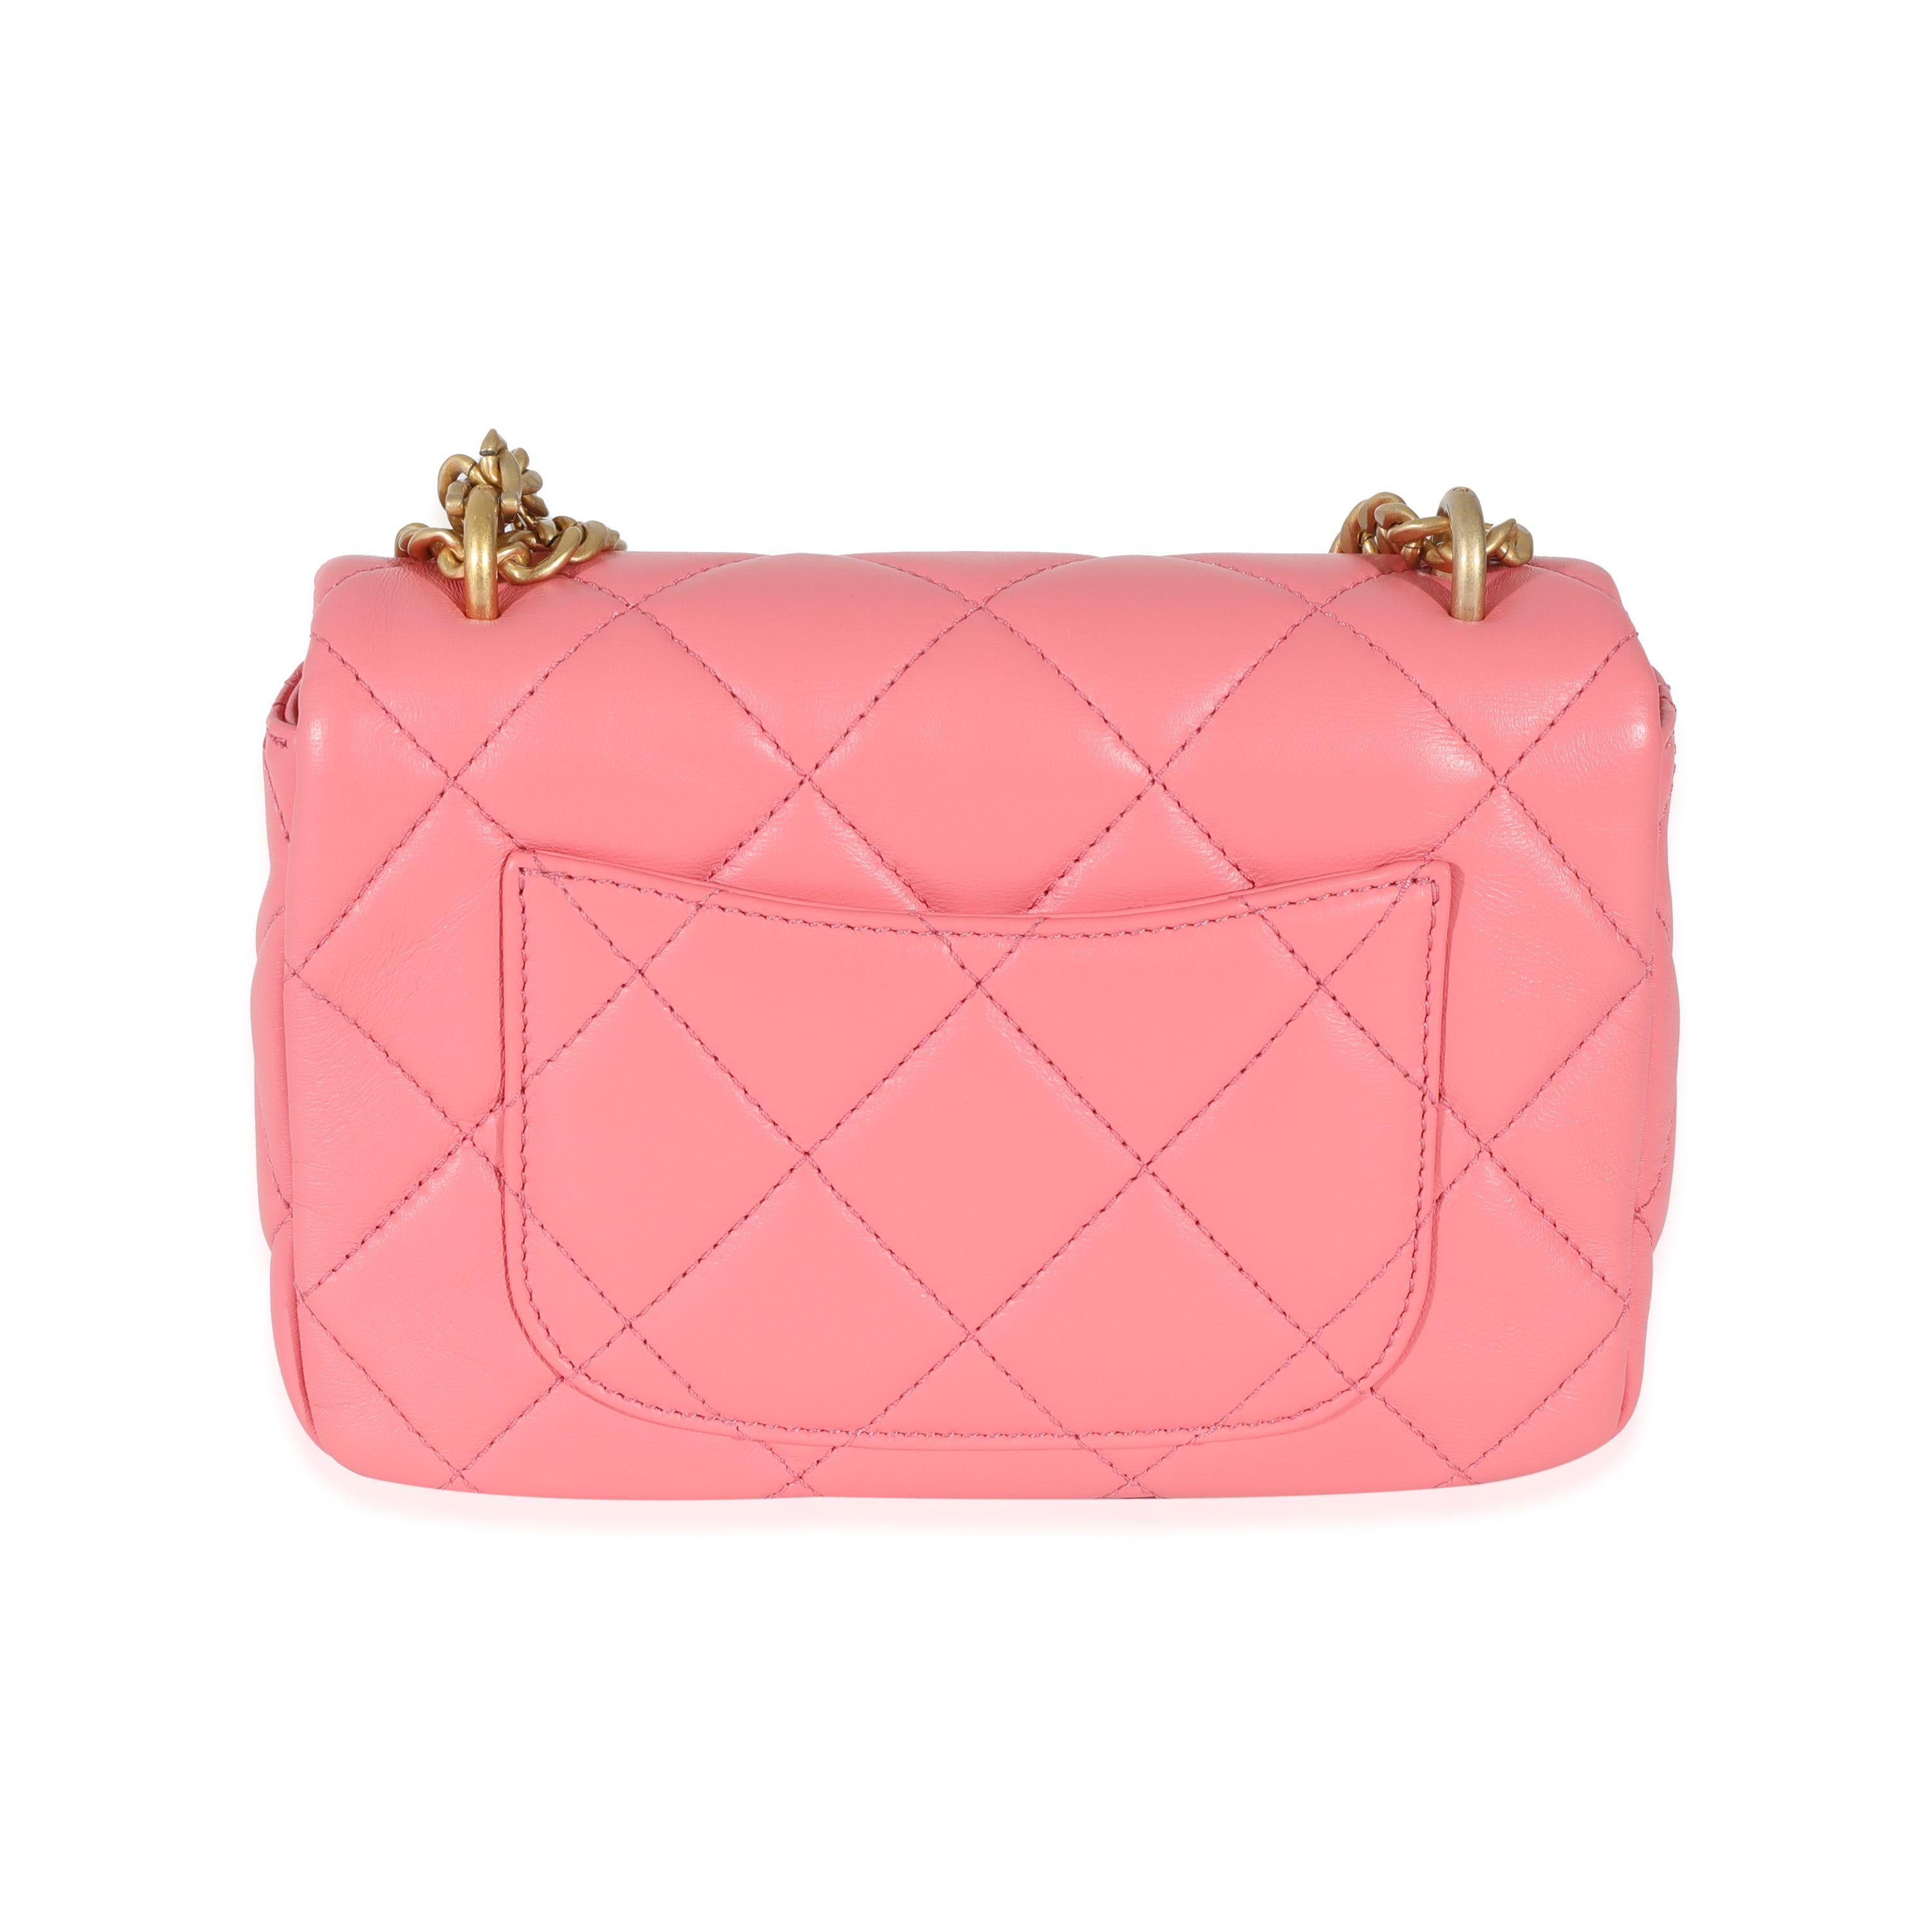 pink chanel mini bag